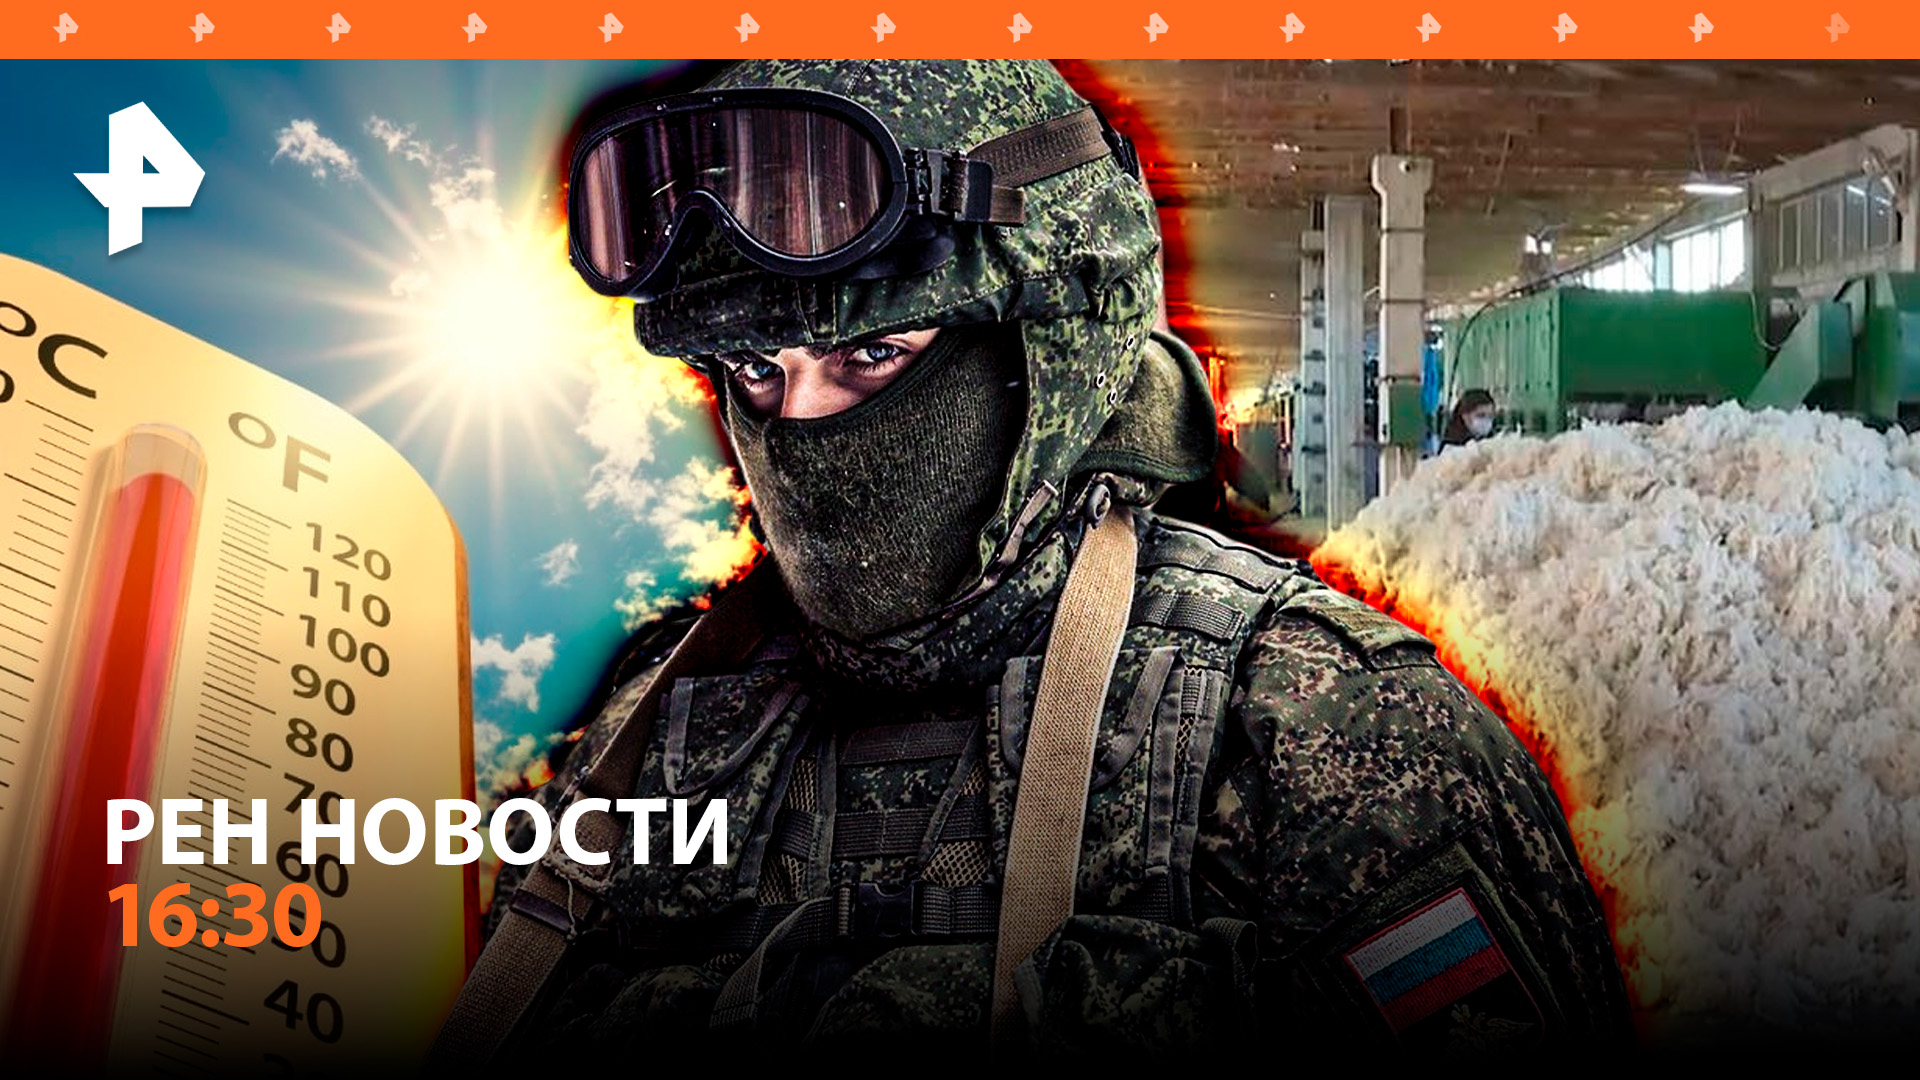 Снайперы ВС РФ на СВО / Столтенберг снимает для Киева ограничения на вооружение / РЕН НОВОСТИ 16:30